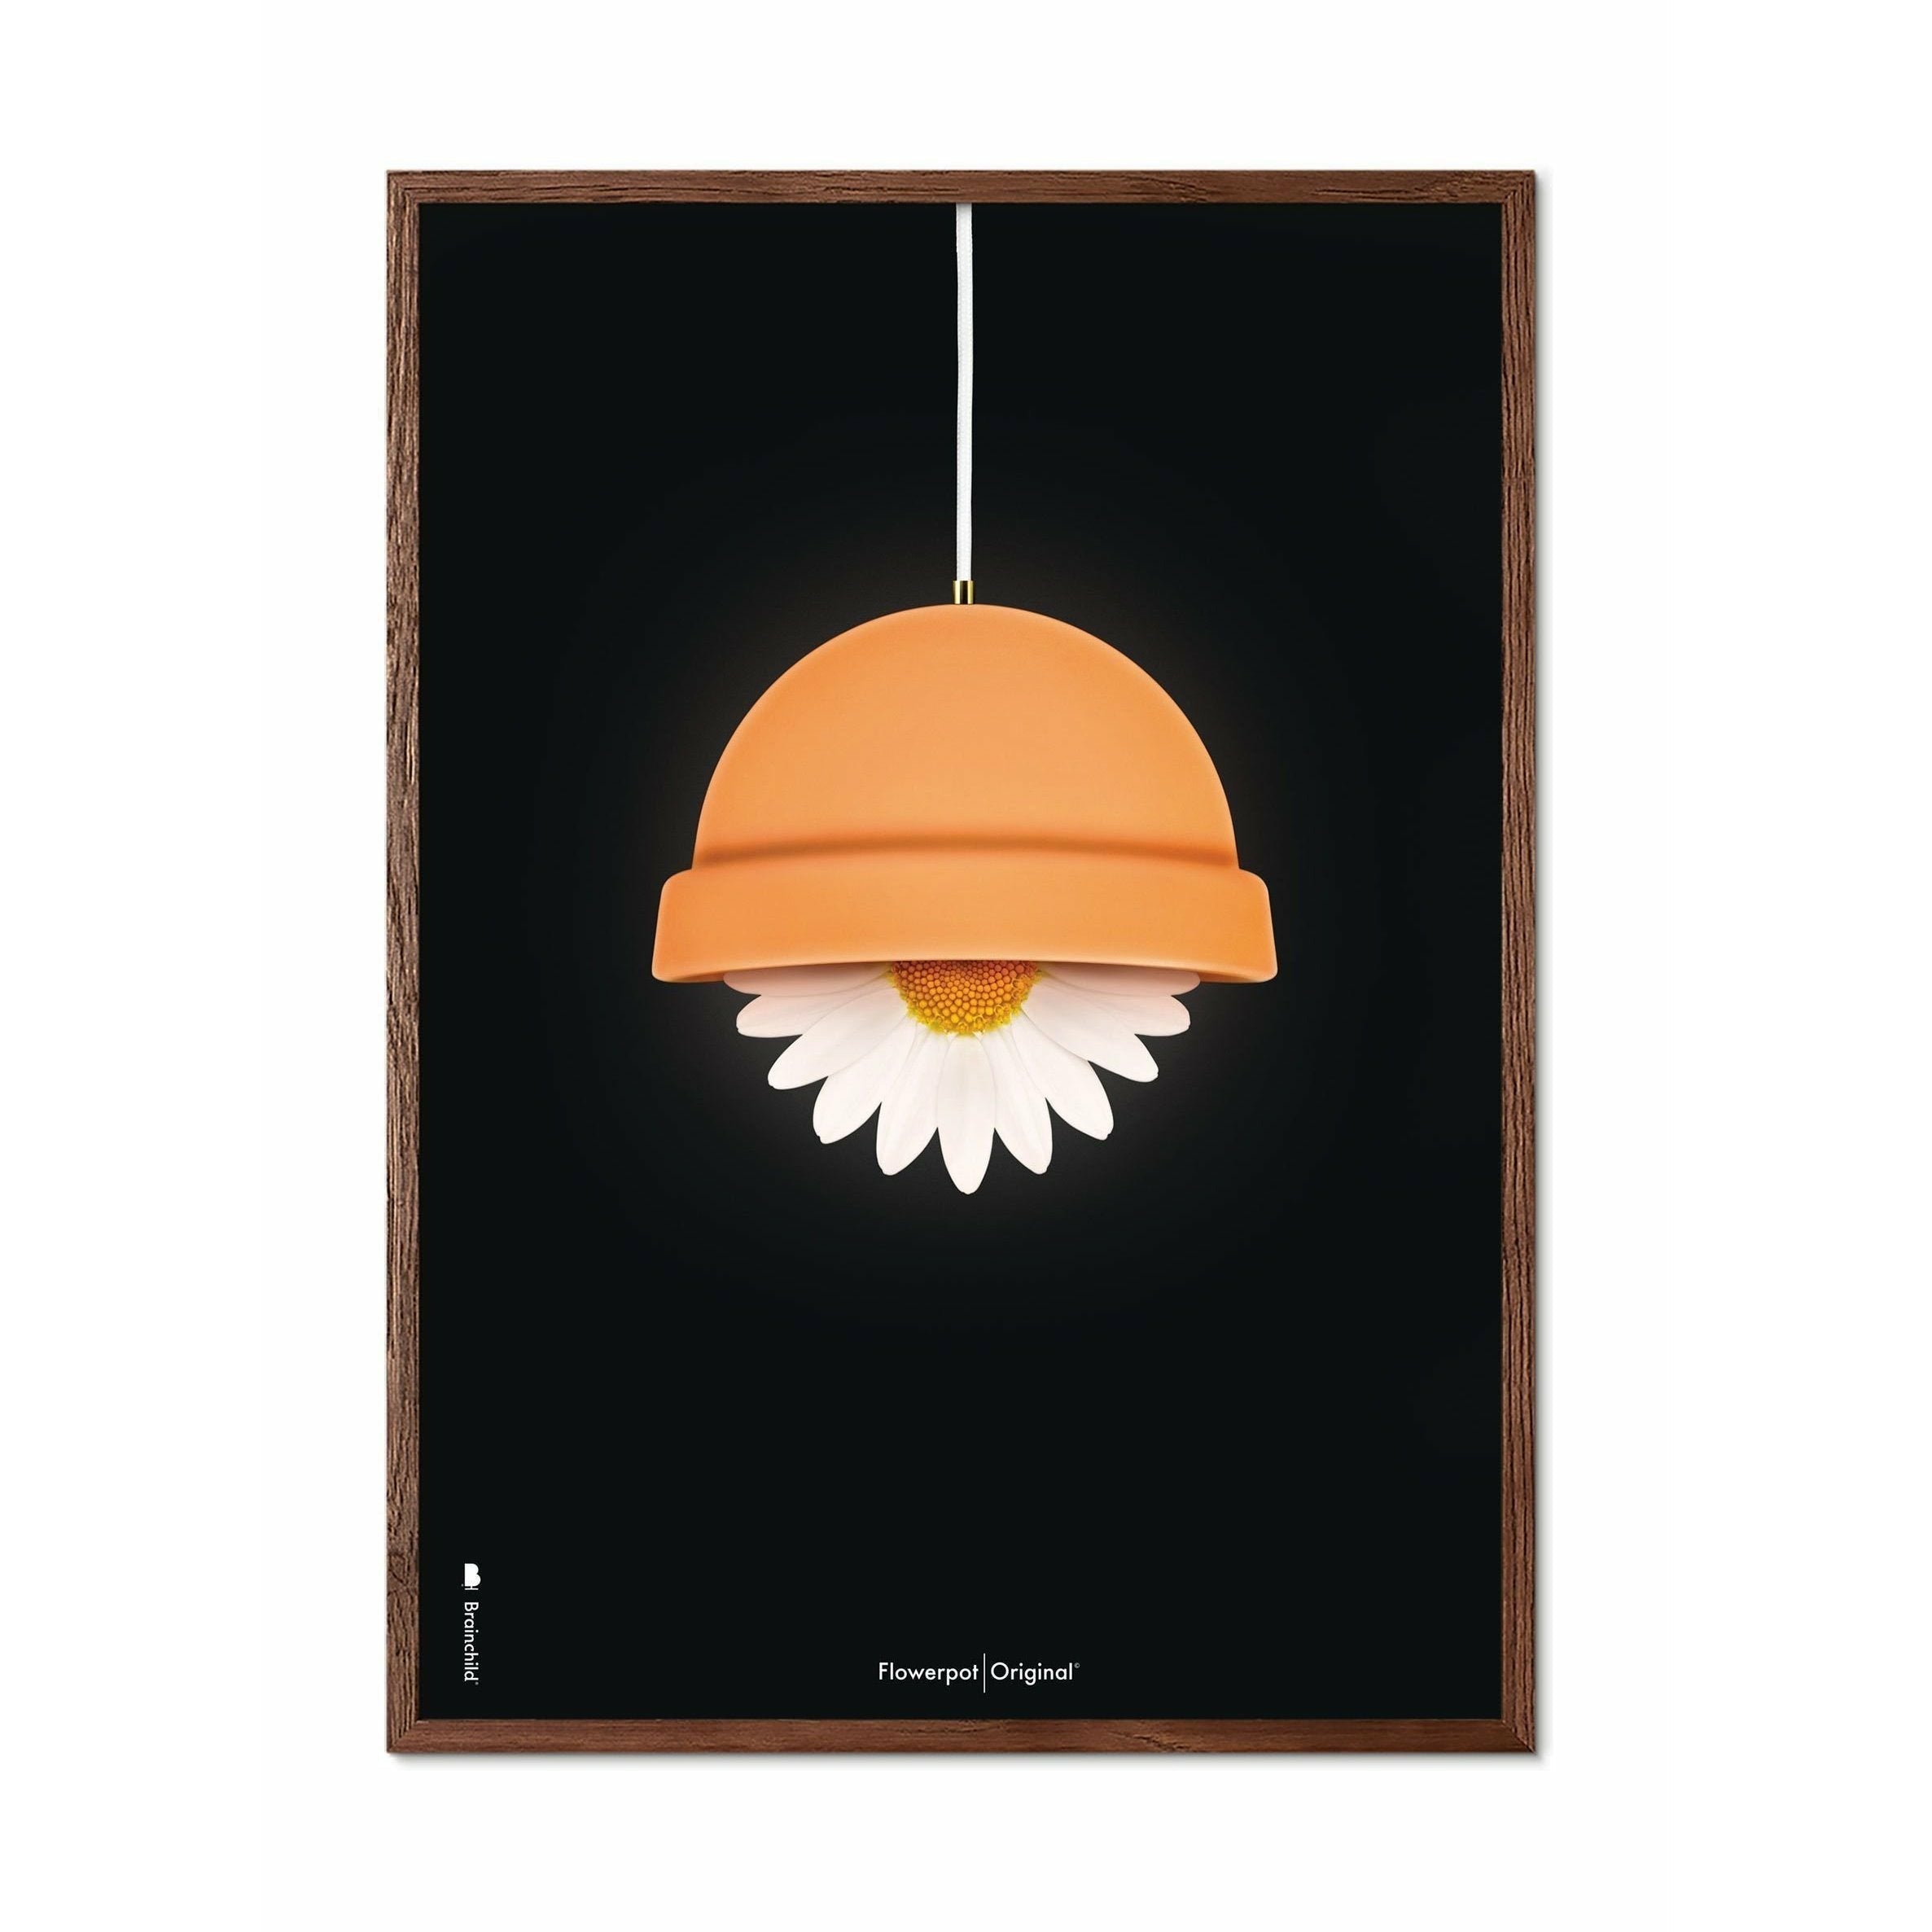 Brainchild Flowerpot Klassisk Plakat, Ramme I Mørkt Træ 70X100 Cm, Sort Baggrund